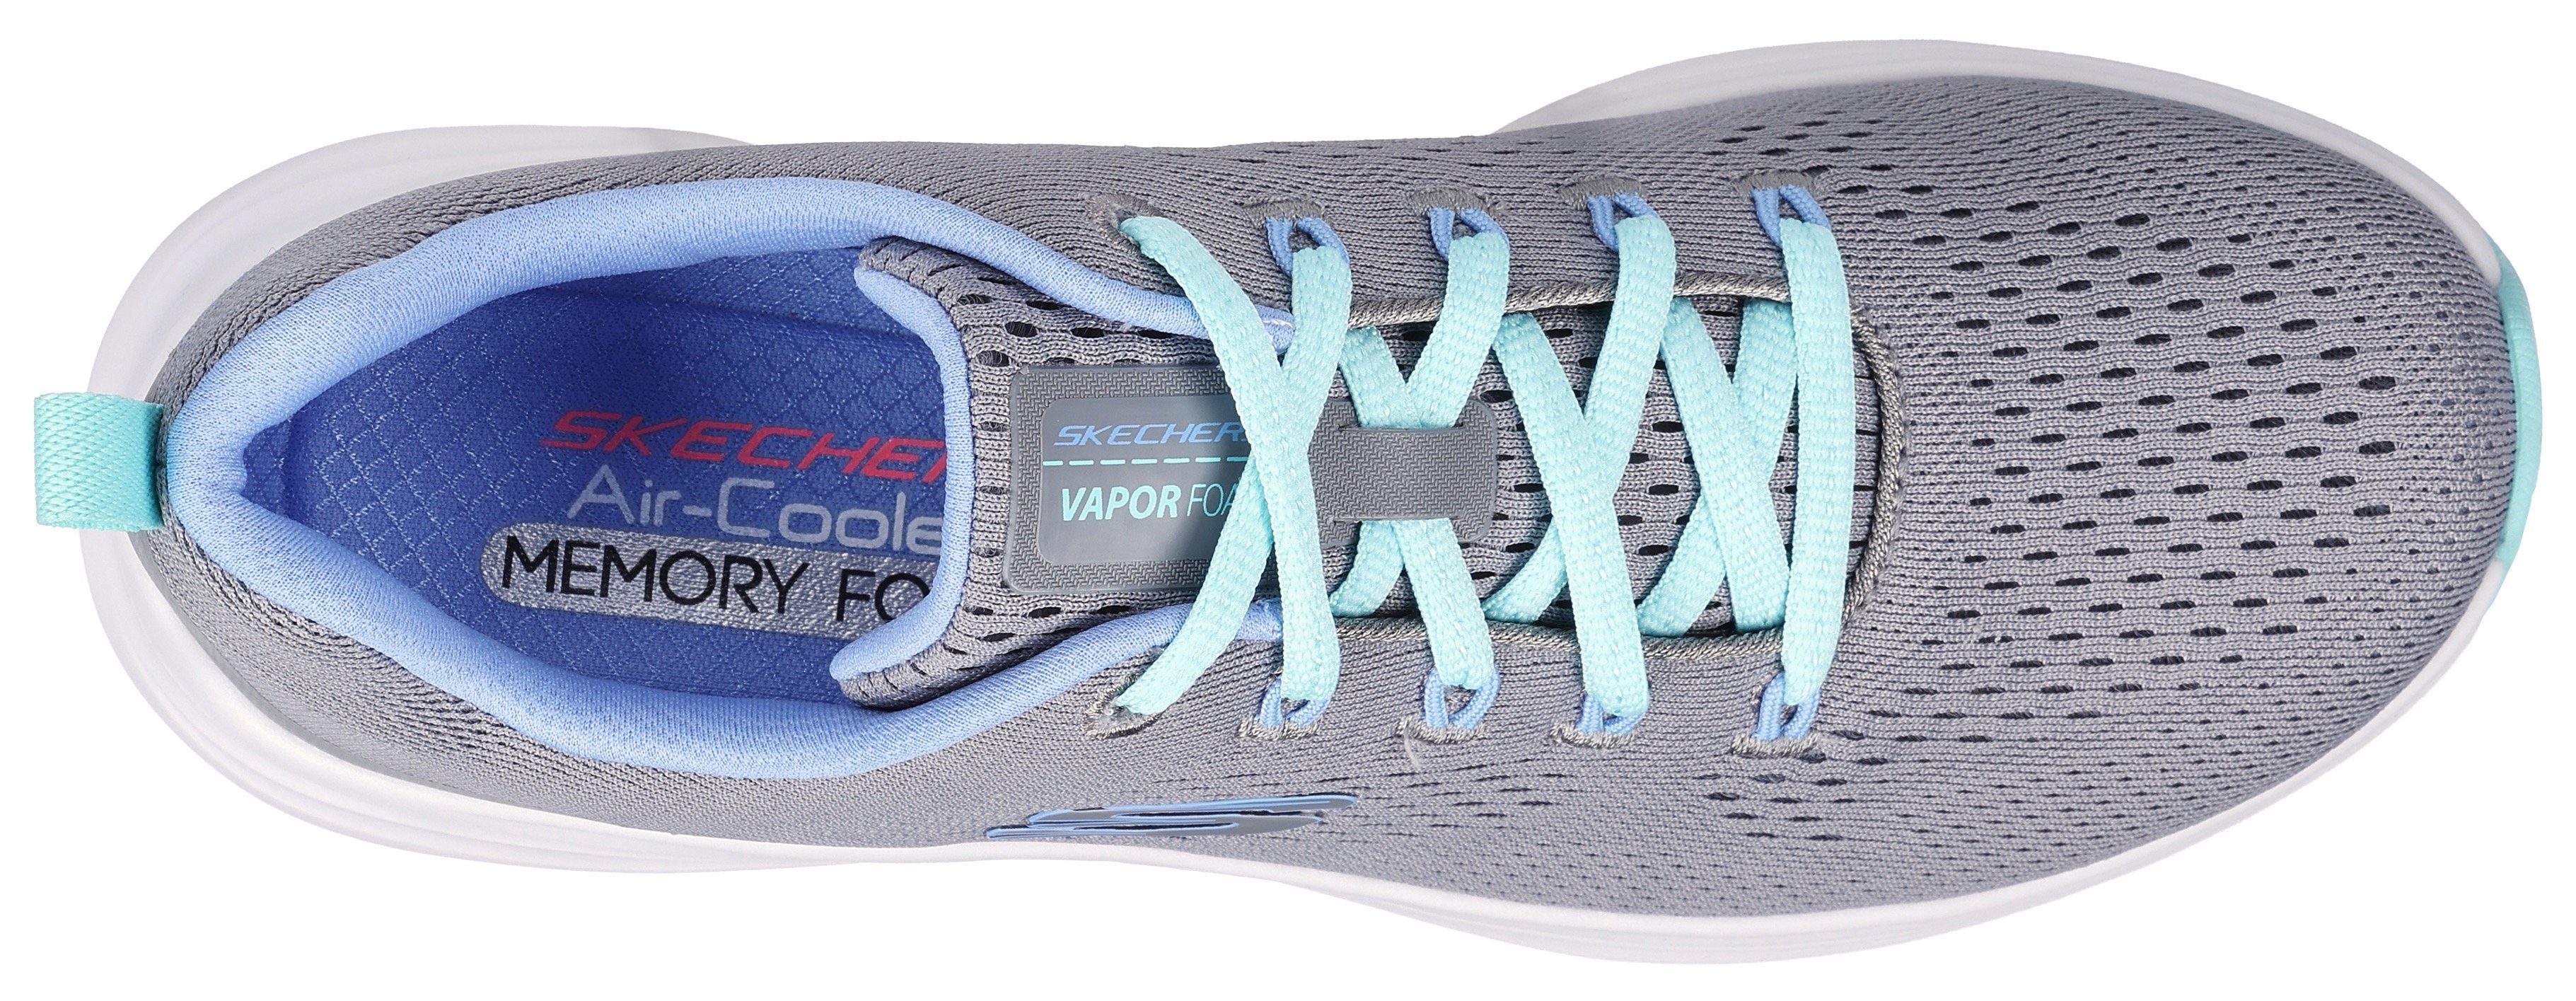 Sneaker grau-mint mit Kontrastdetails VAPOR dezenten Skechers FOAM-